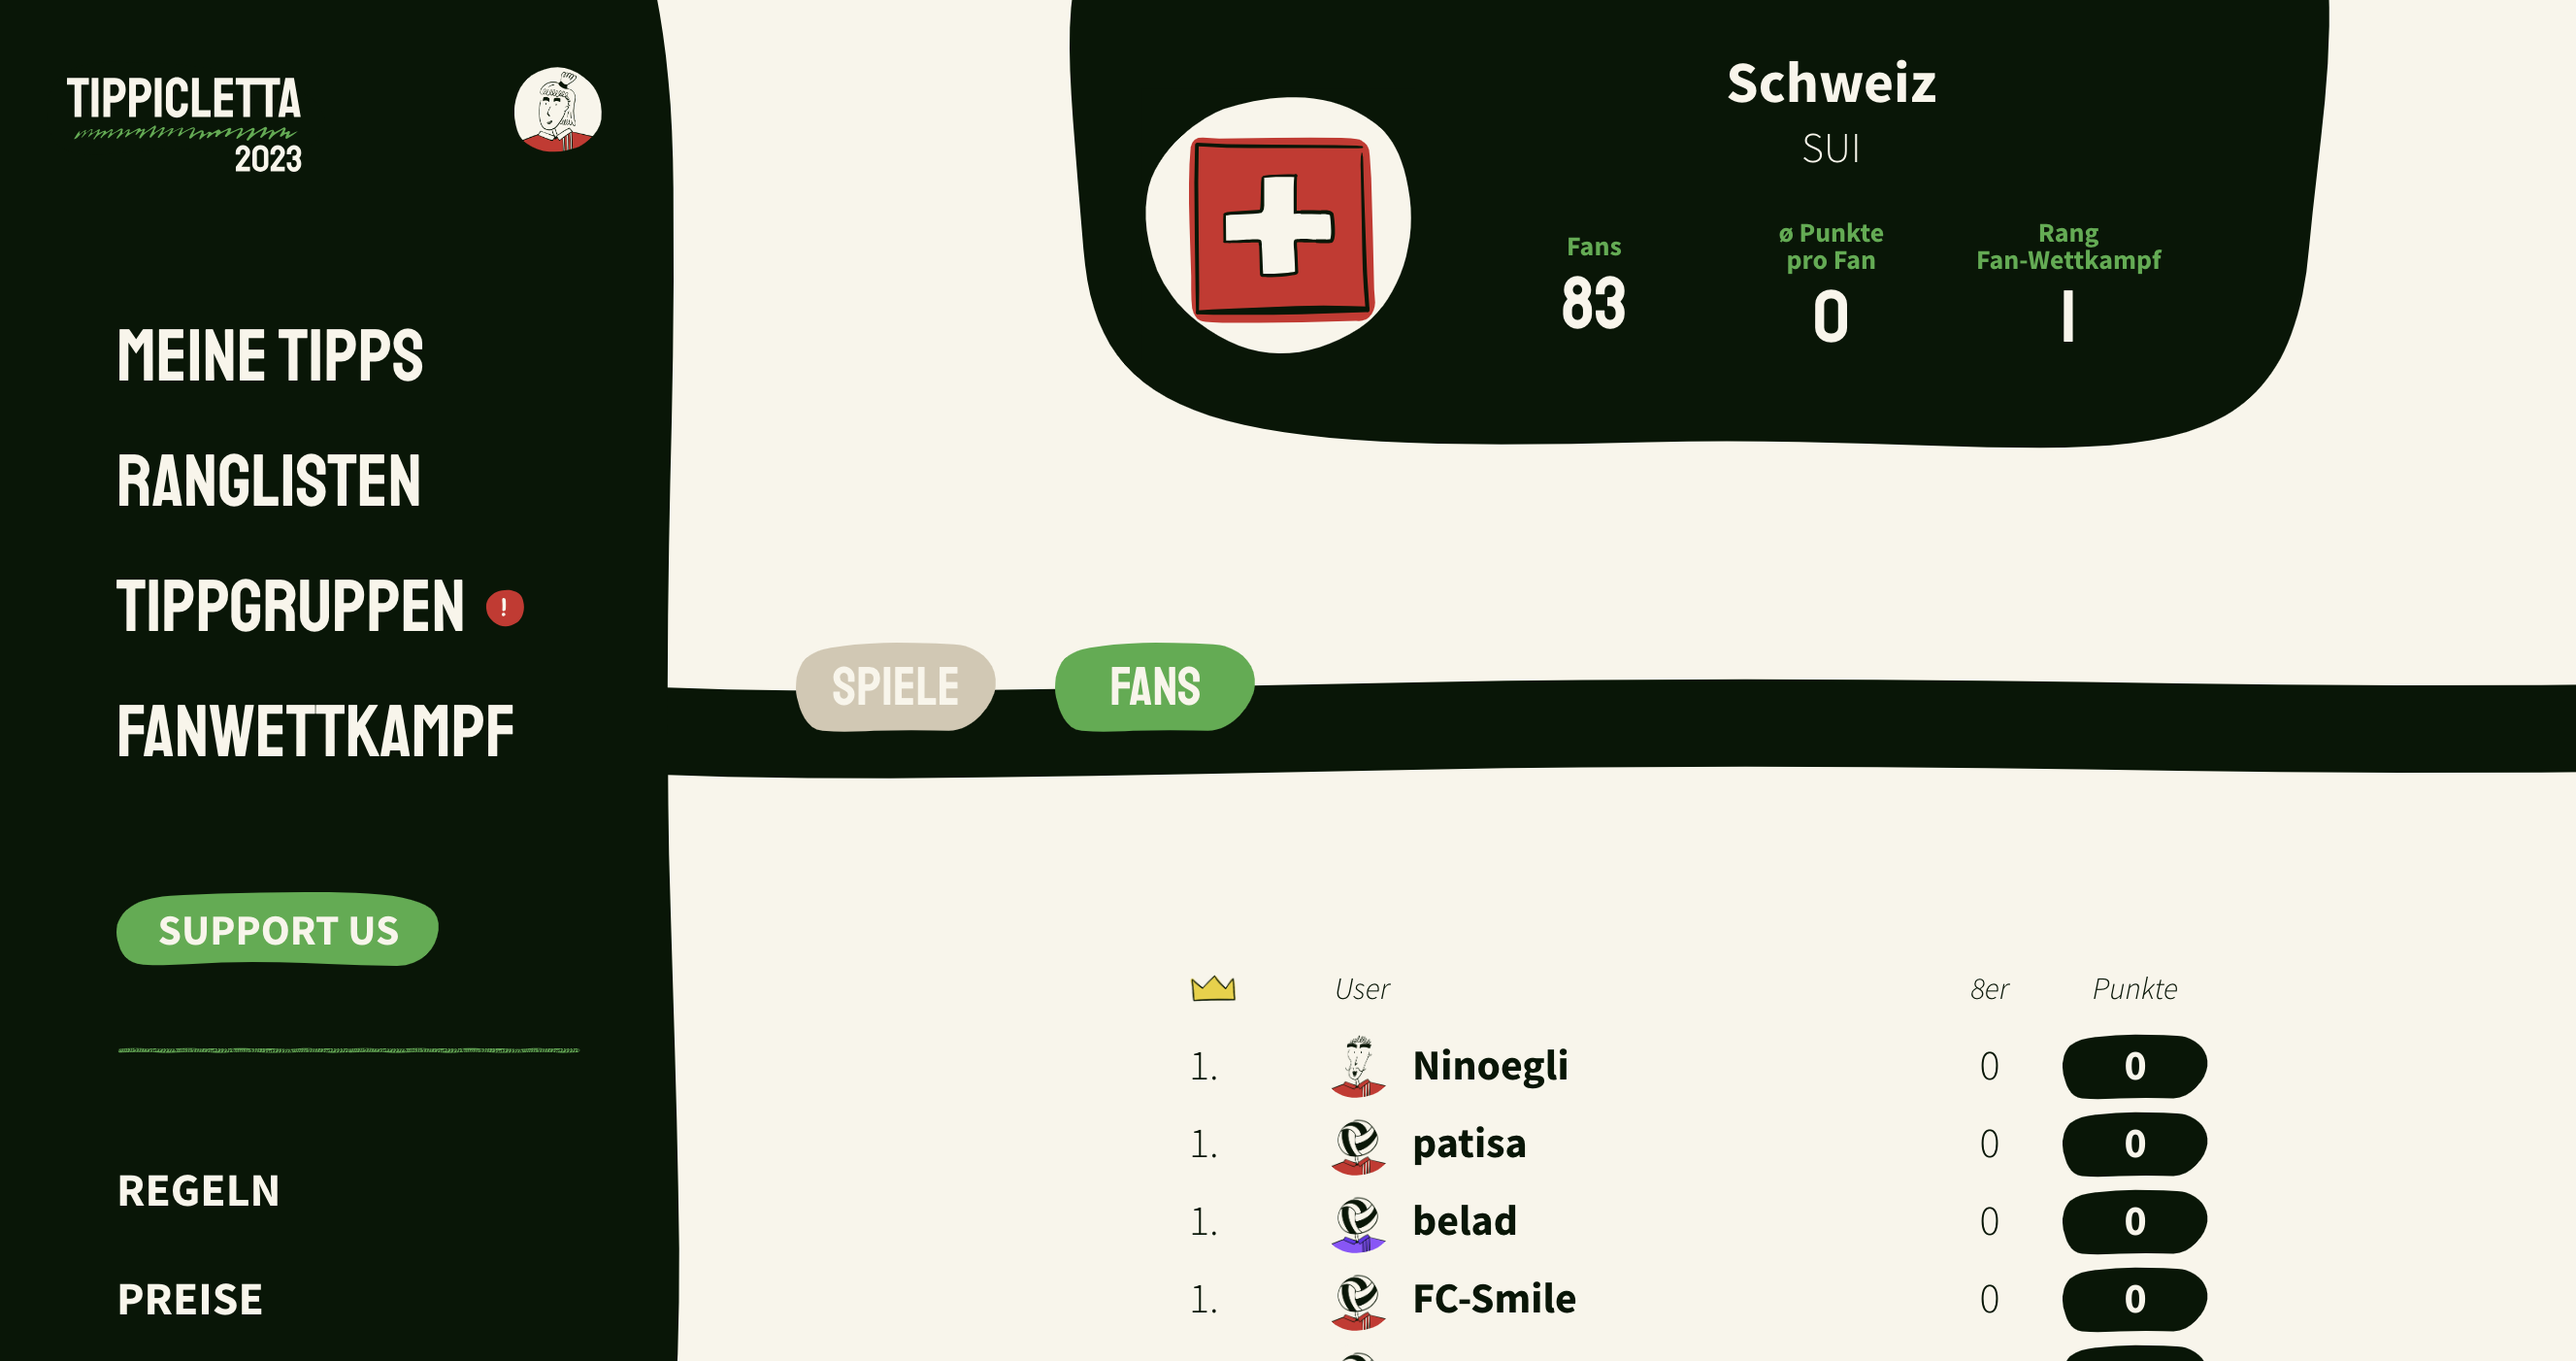 Desktop-Ansicht der Fan-Seite der Schweiz, Tippicletta 2023